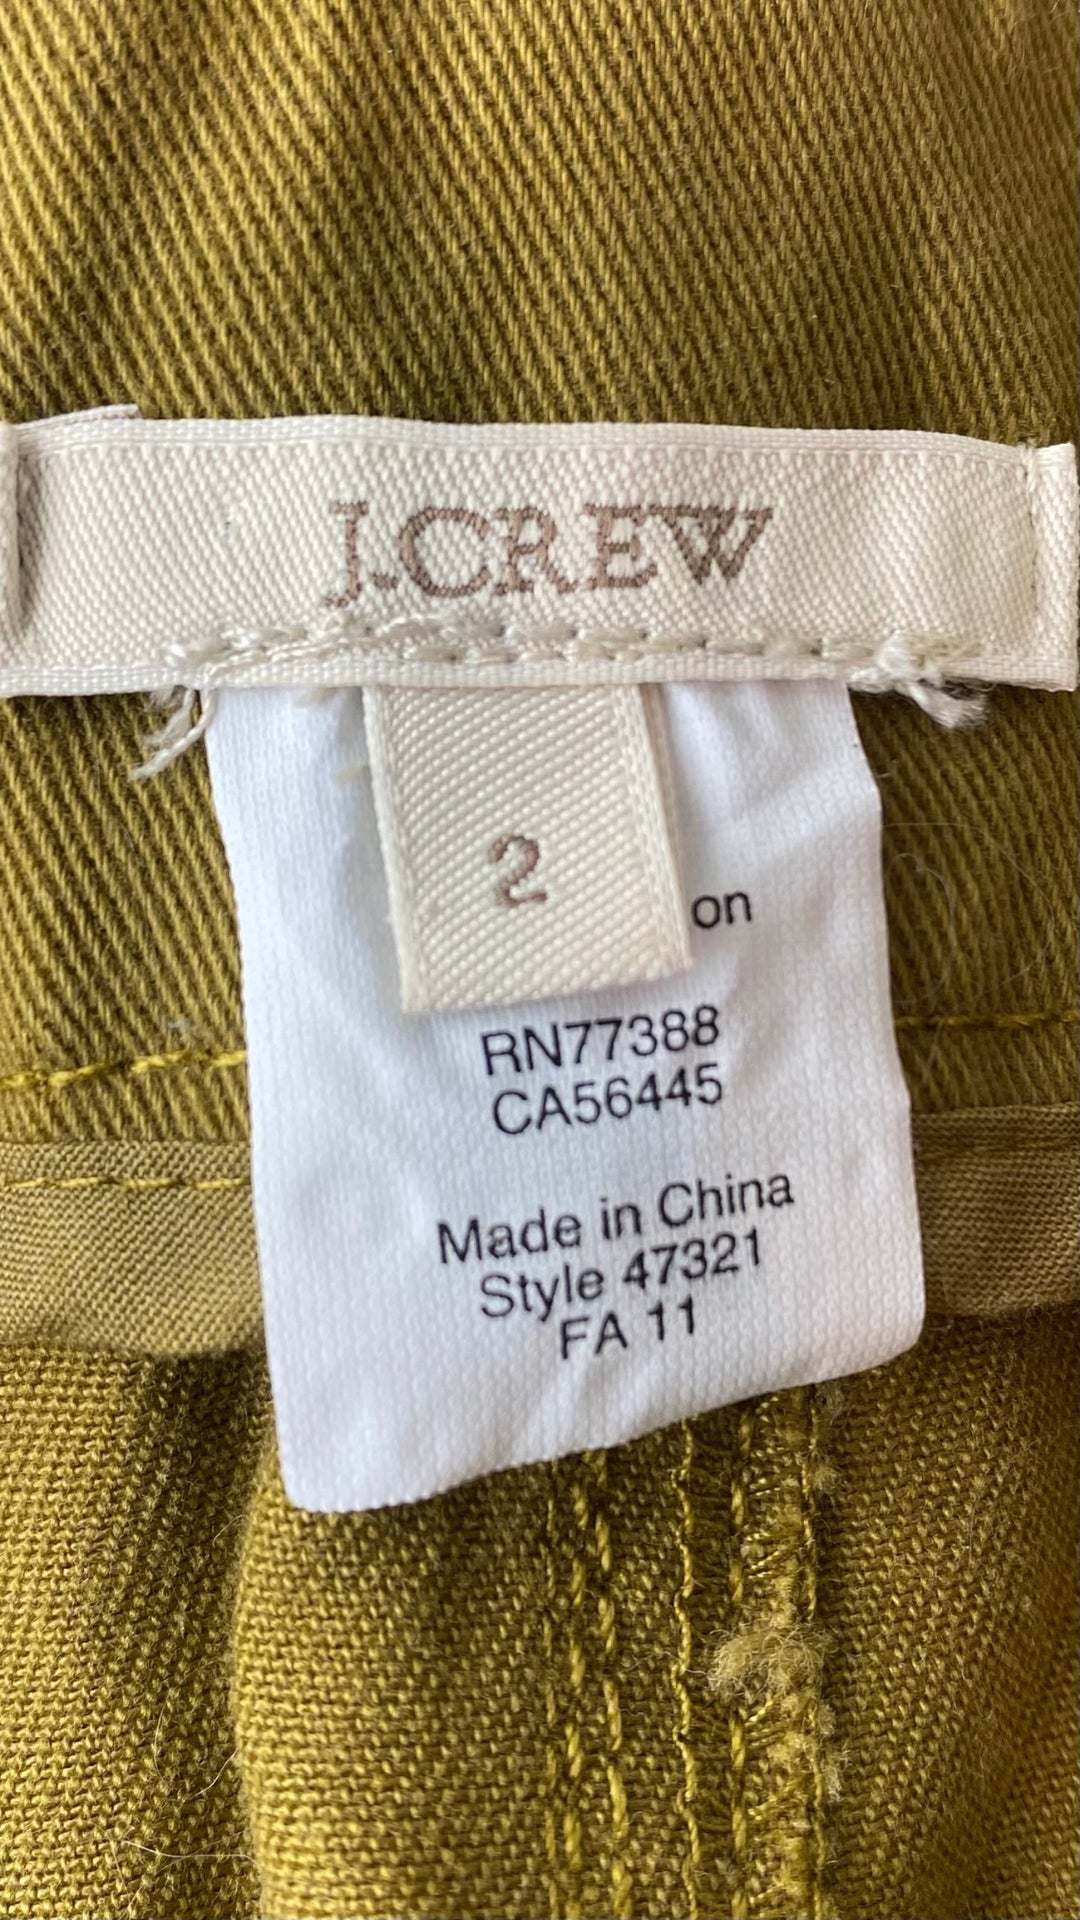 Jupe boutonnée ligne A en coton J.Crew, taille 2 (xs-s). Vue de l'étiquette de marque et taille.